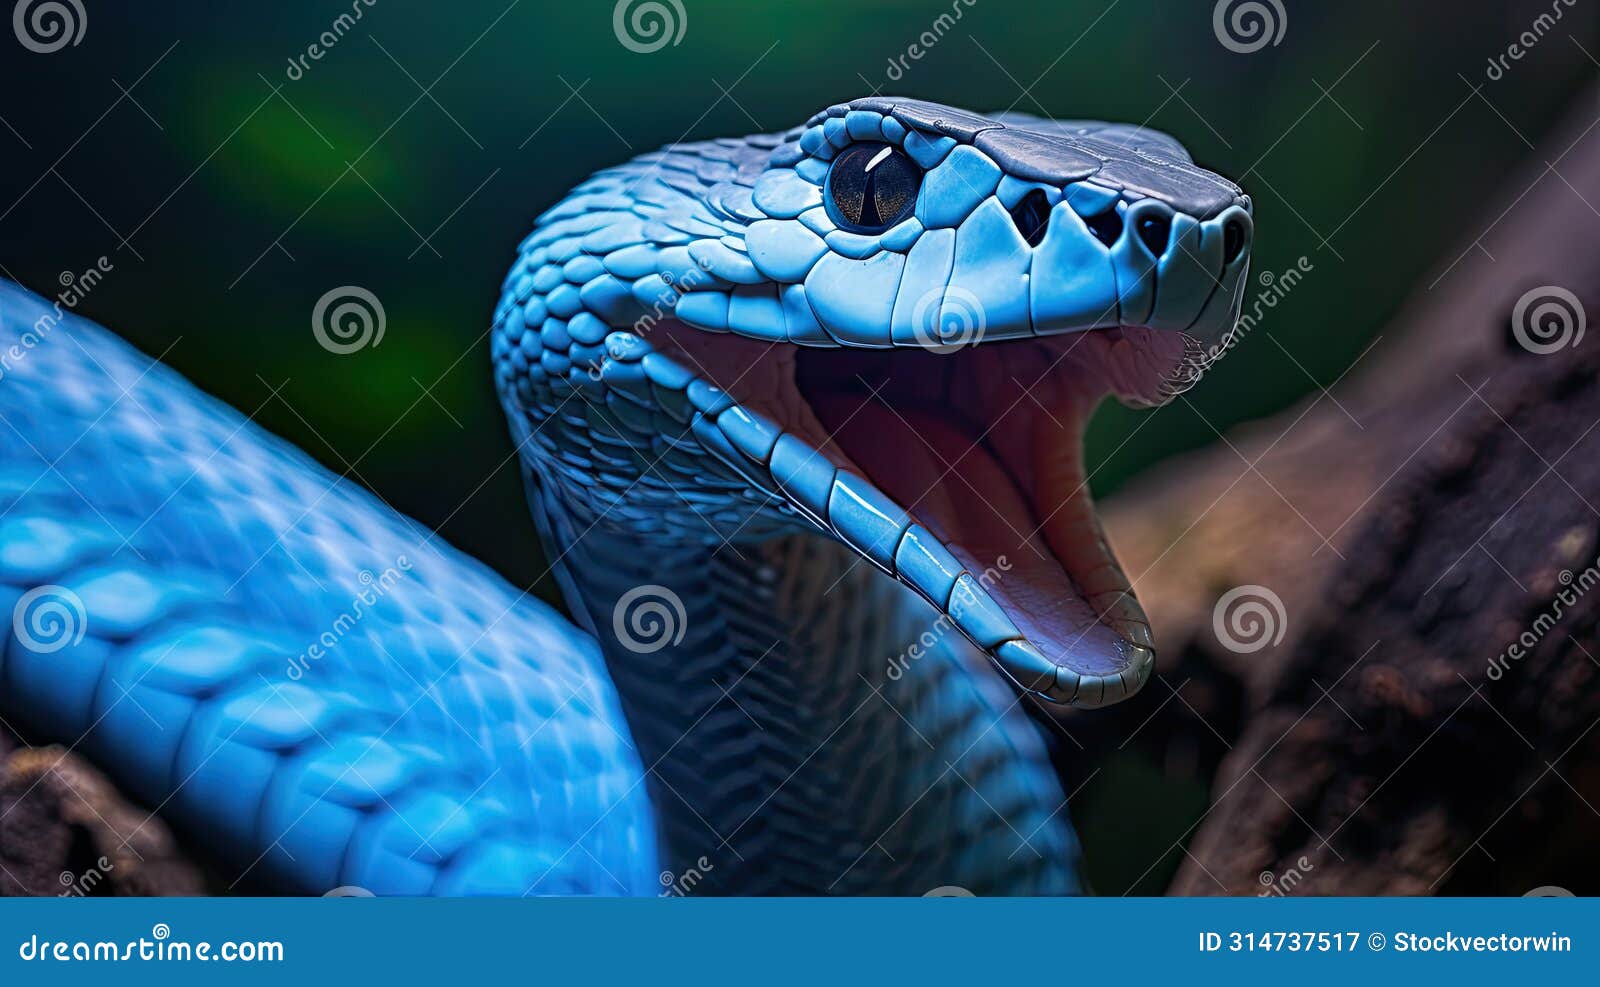 slither blue snake